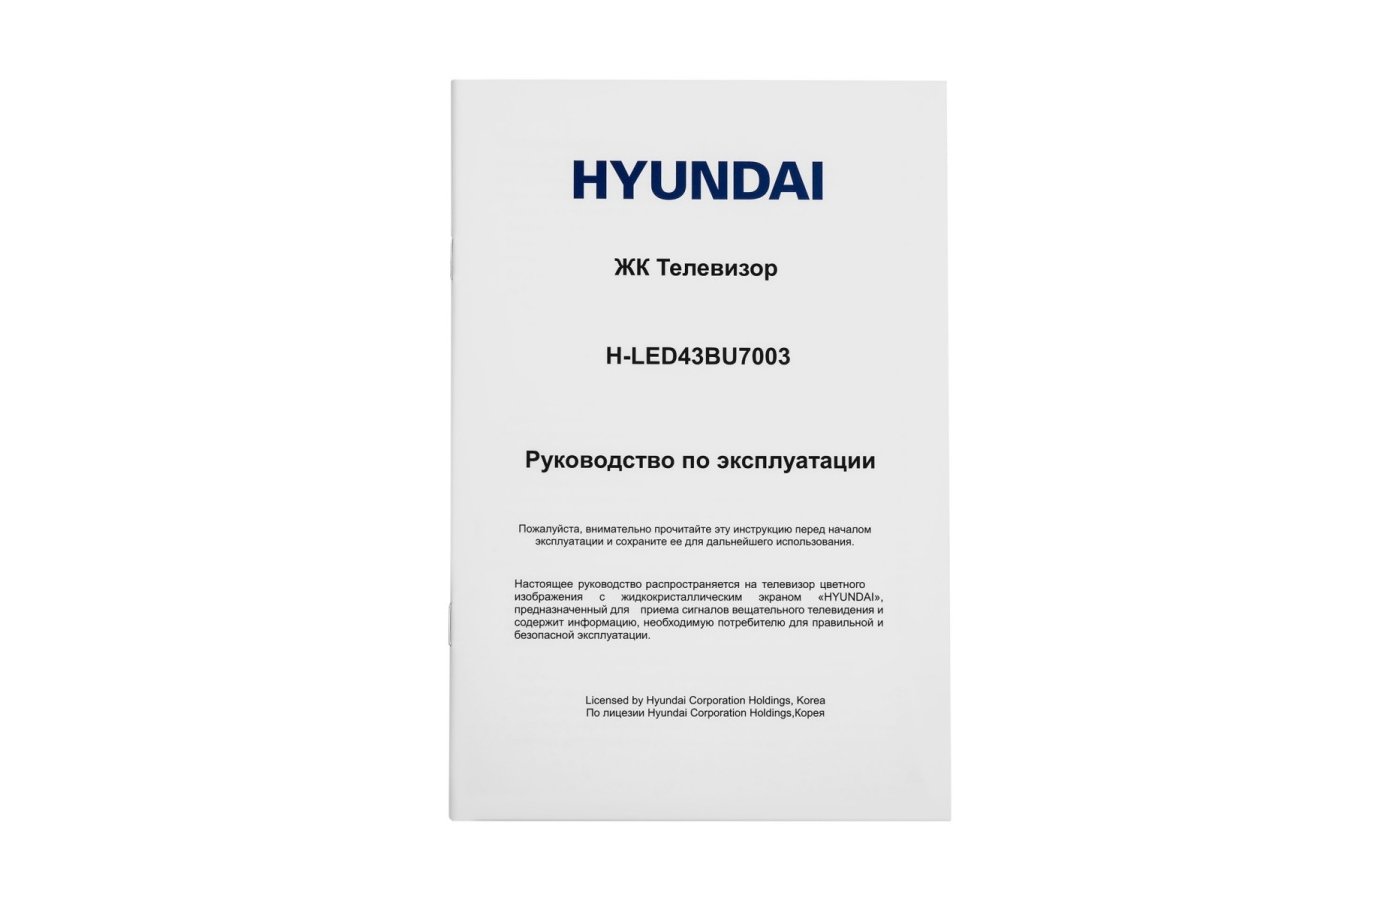 Led43bu7003 телевизор hyundai. Что означаетvfhrthjdrf Hyundai h-led43bu7003.